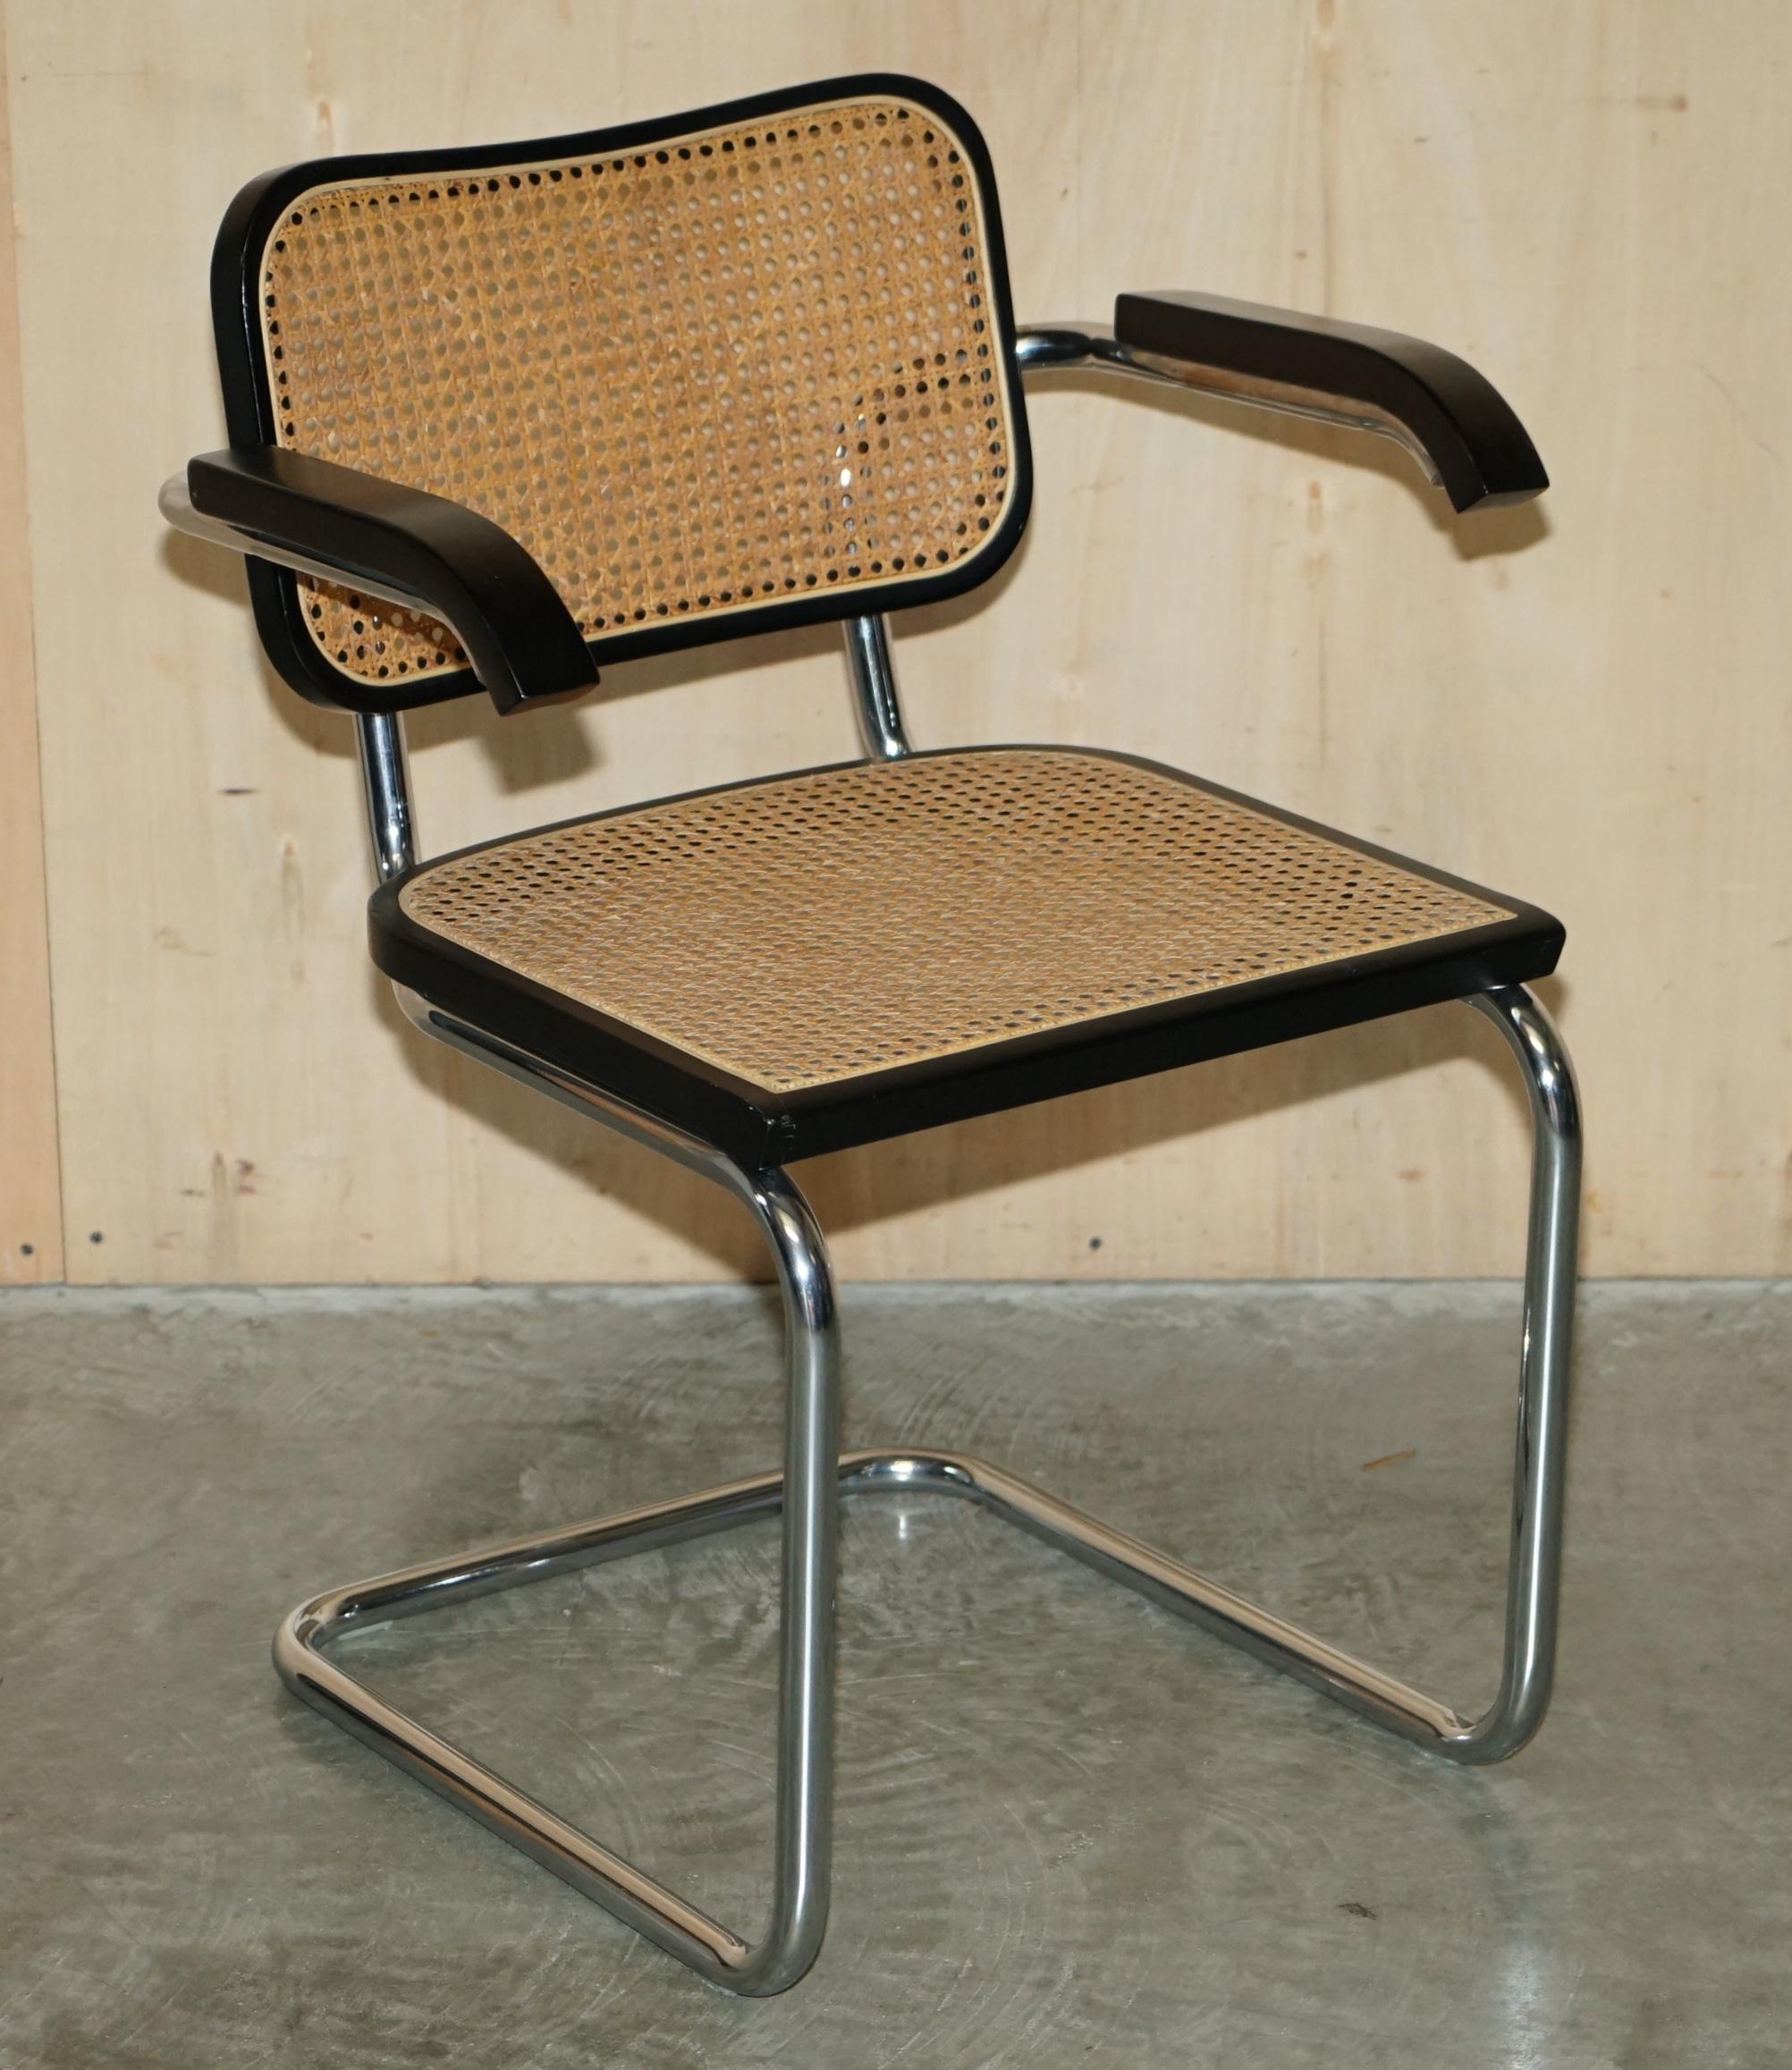 Nous sommes ravis d'offrir à la vente cette suite de quatre fauteuils Cesca, fabriqués en Italie et estampillés Marcel Breuer, avec des cadres chromés et un revêtement en bergère. 

Ces chaises sont vraiment très rares, il est difficile de trouver